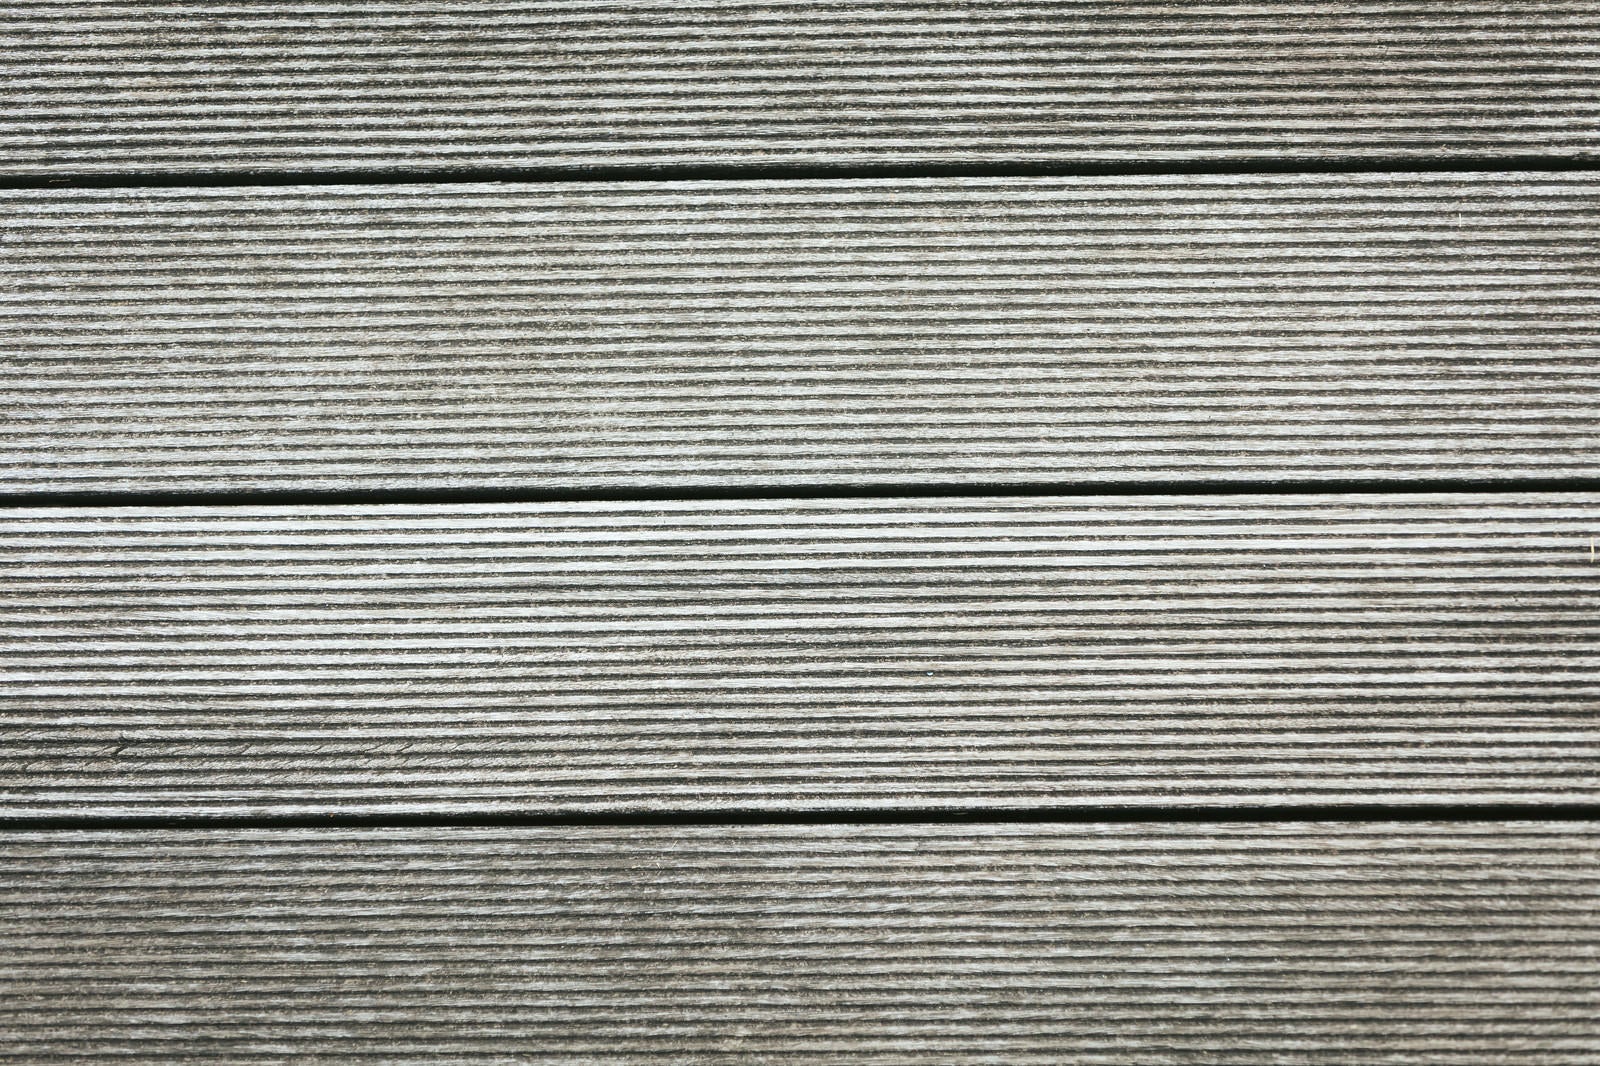 「足場の木の板（テクスチャー）」の写真